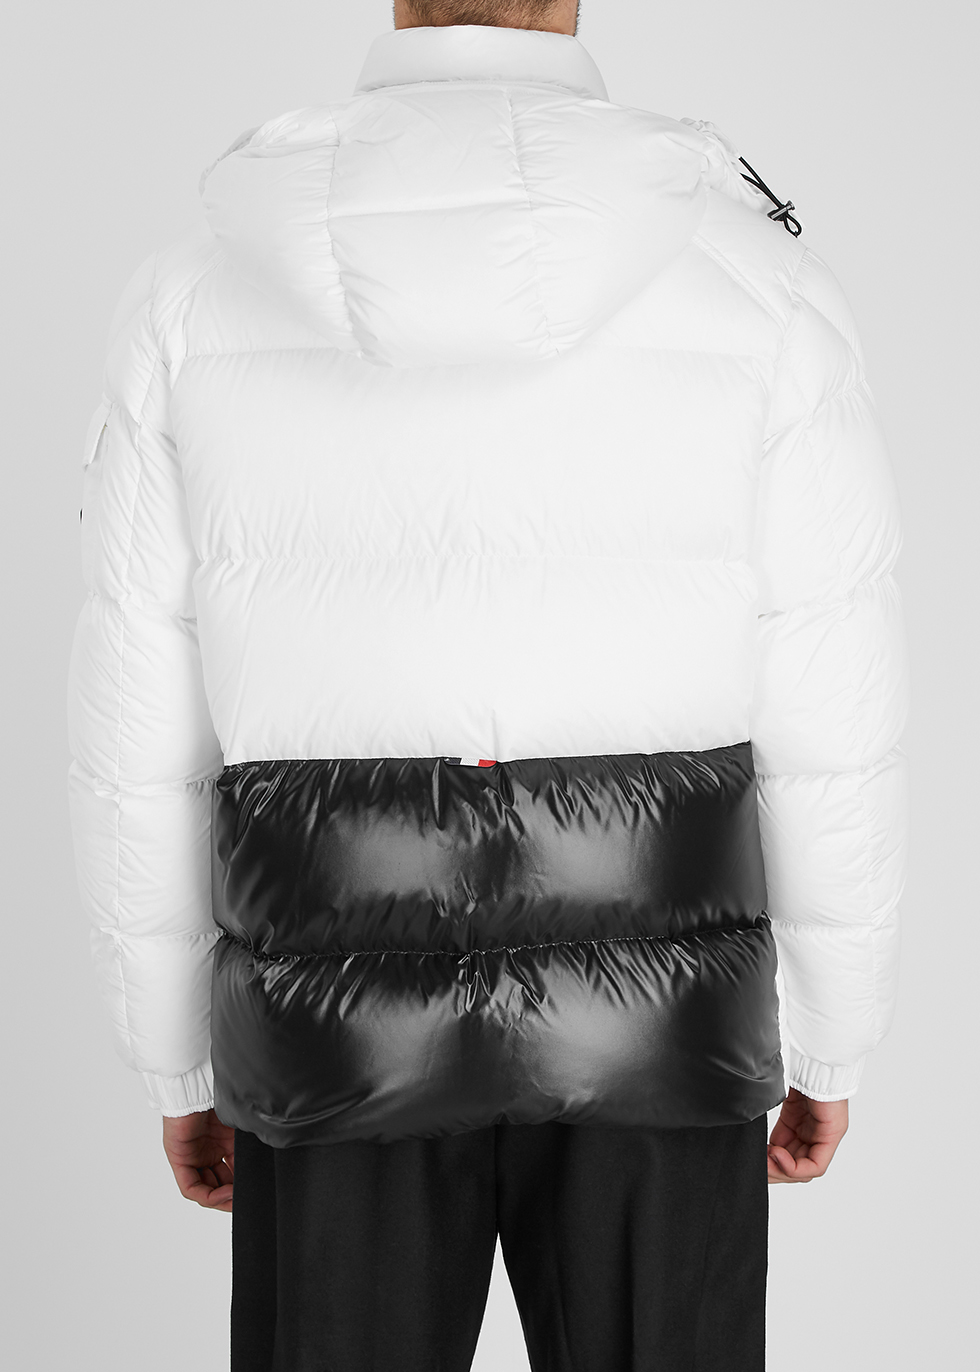 moncler white ski jacket